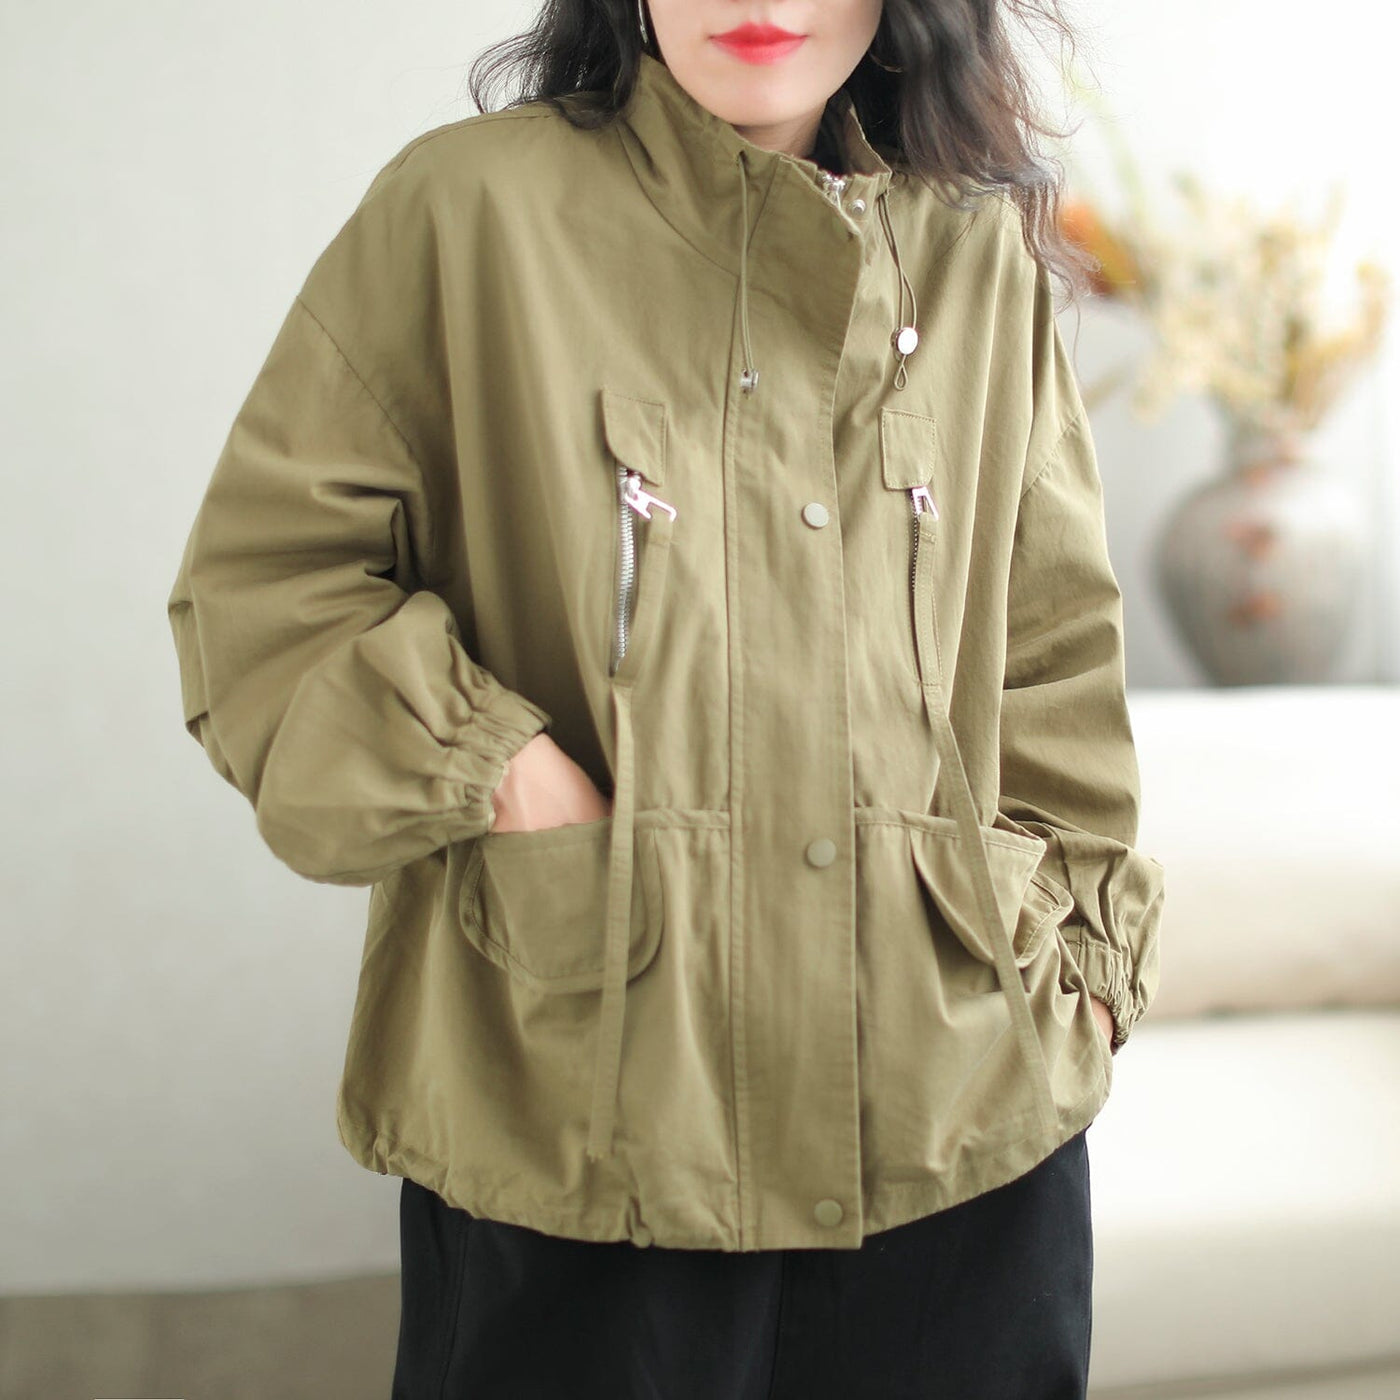 Autumn Stylish Casual Loose Fashion Patchwork Jacket